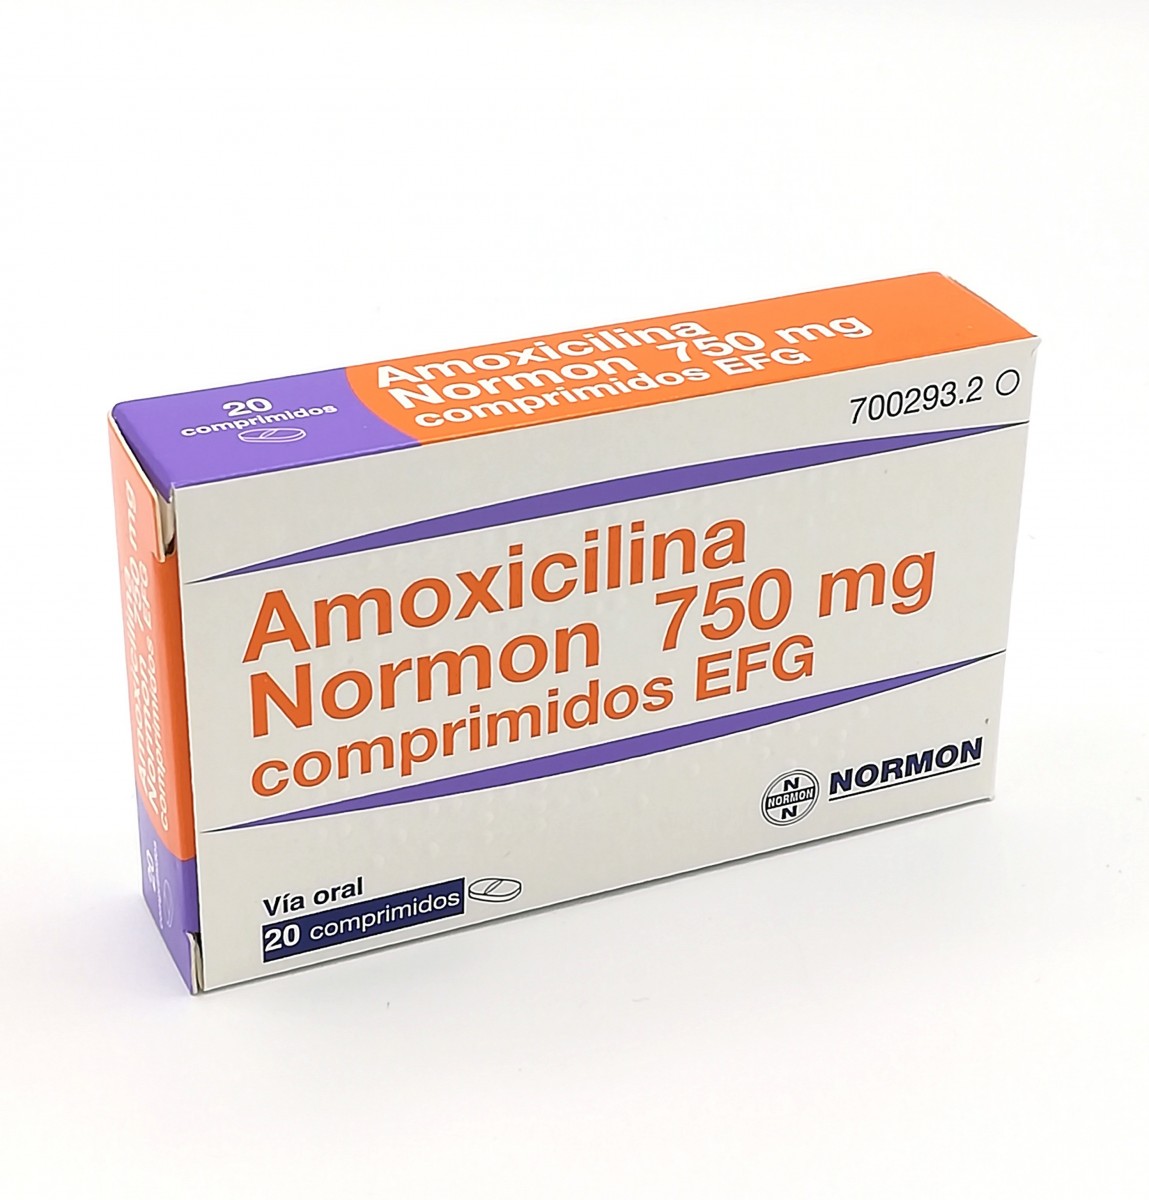 AMOXICILINA NORMON 750 MG COMPRIMIDOS EFG  , 30 comprimidos fotografía del envase.